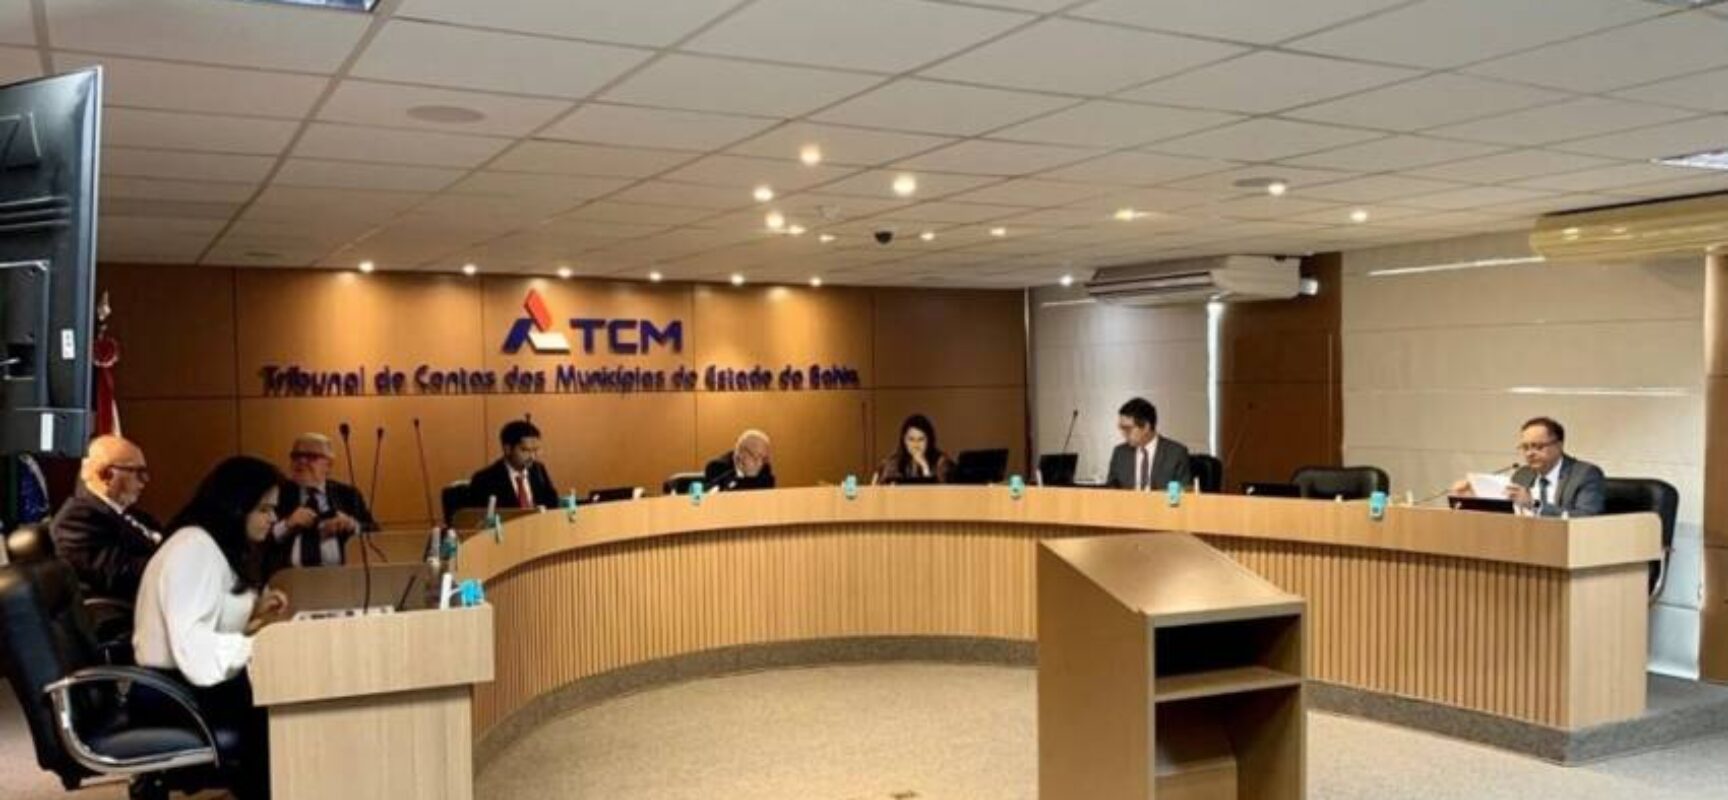 Jerônimo Rodrigues anula nomeação de servidor para o TCM